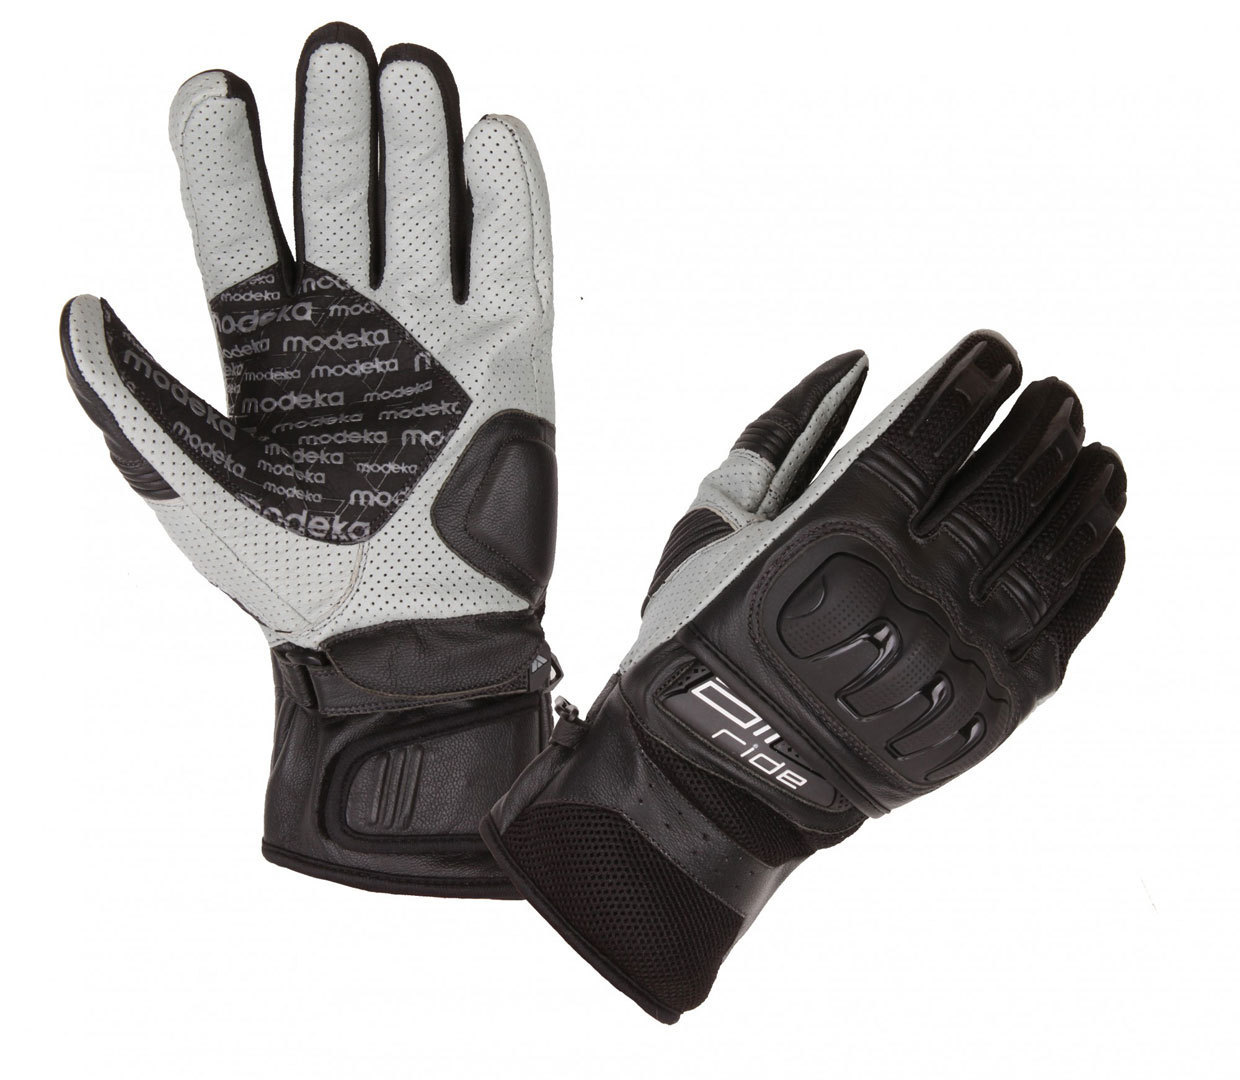 Modeka Air Ride Motorcycle Gloves, black-white, Size 3XL, black-white, Size 3XL